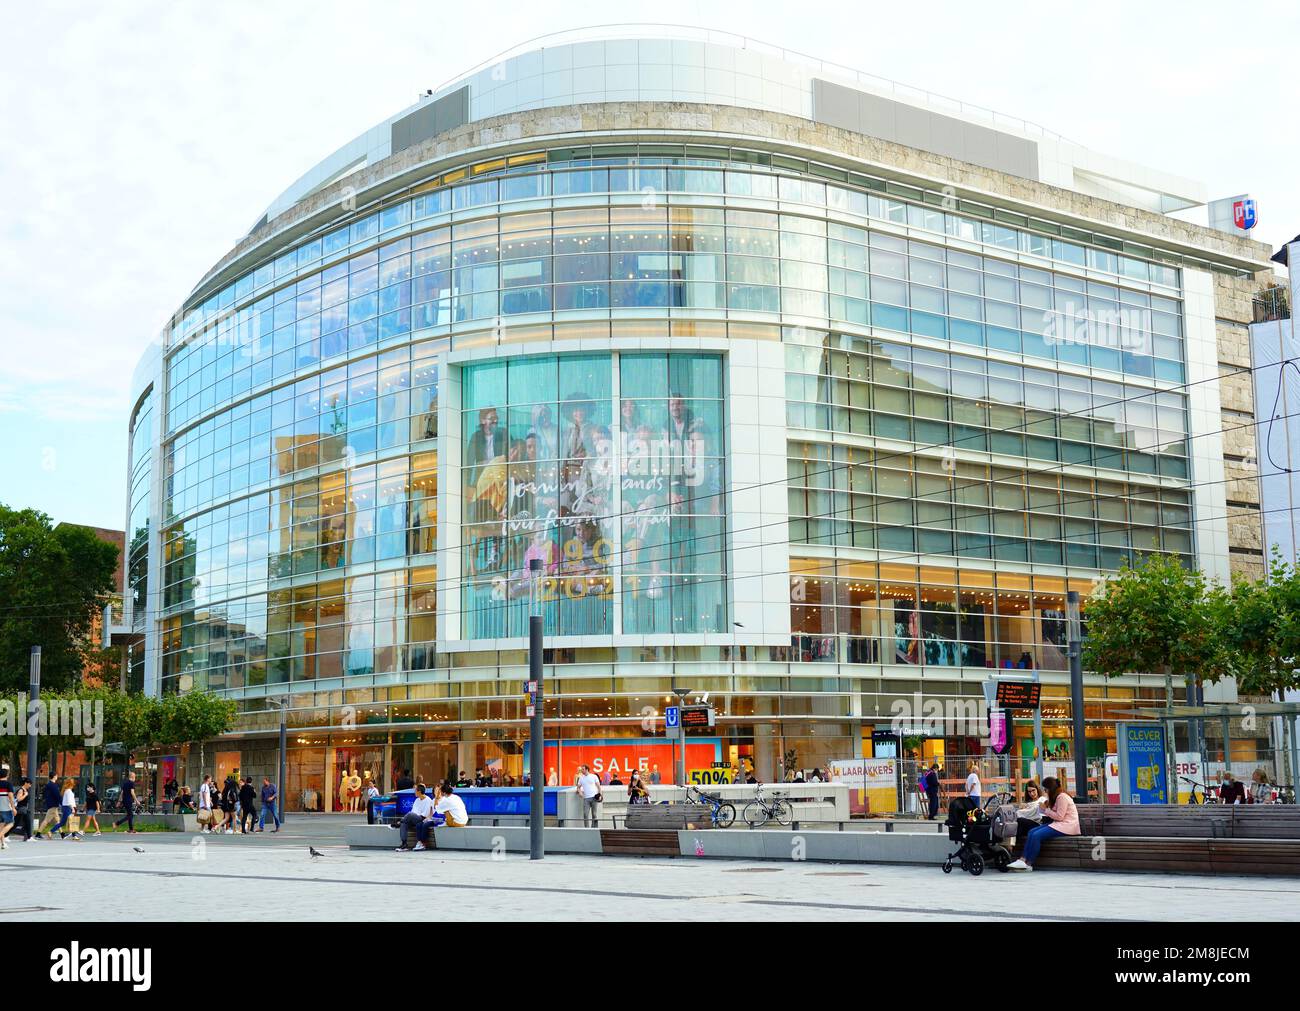 La façade moderne en verre du grand magasin de vêtements Peek & Cloppenburg dans le centre-ville de Düsseldorf/Allemagne. Banque D'Images